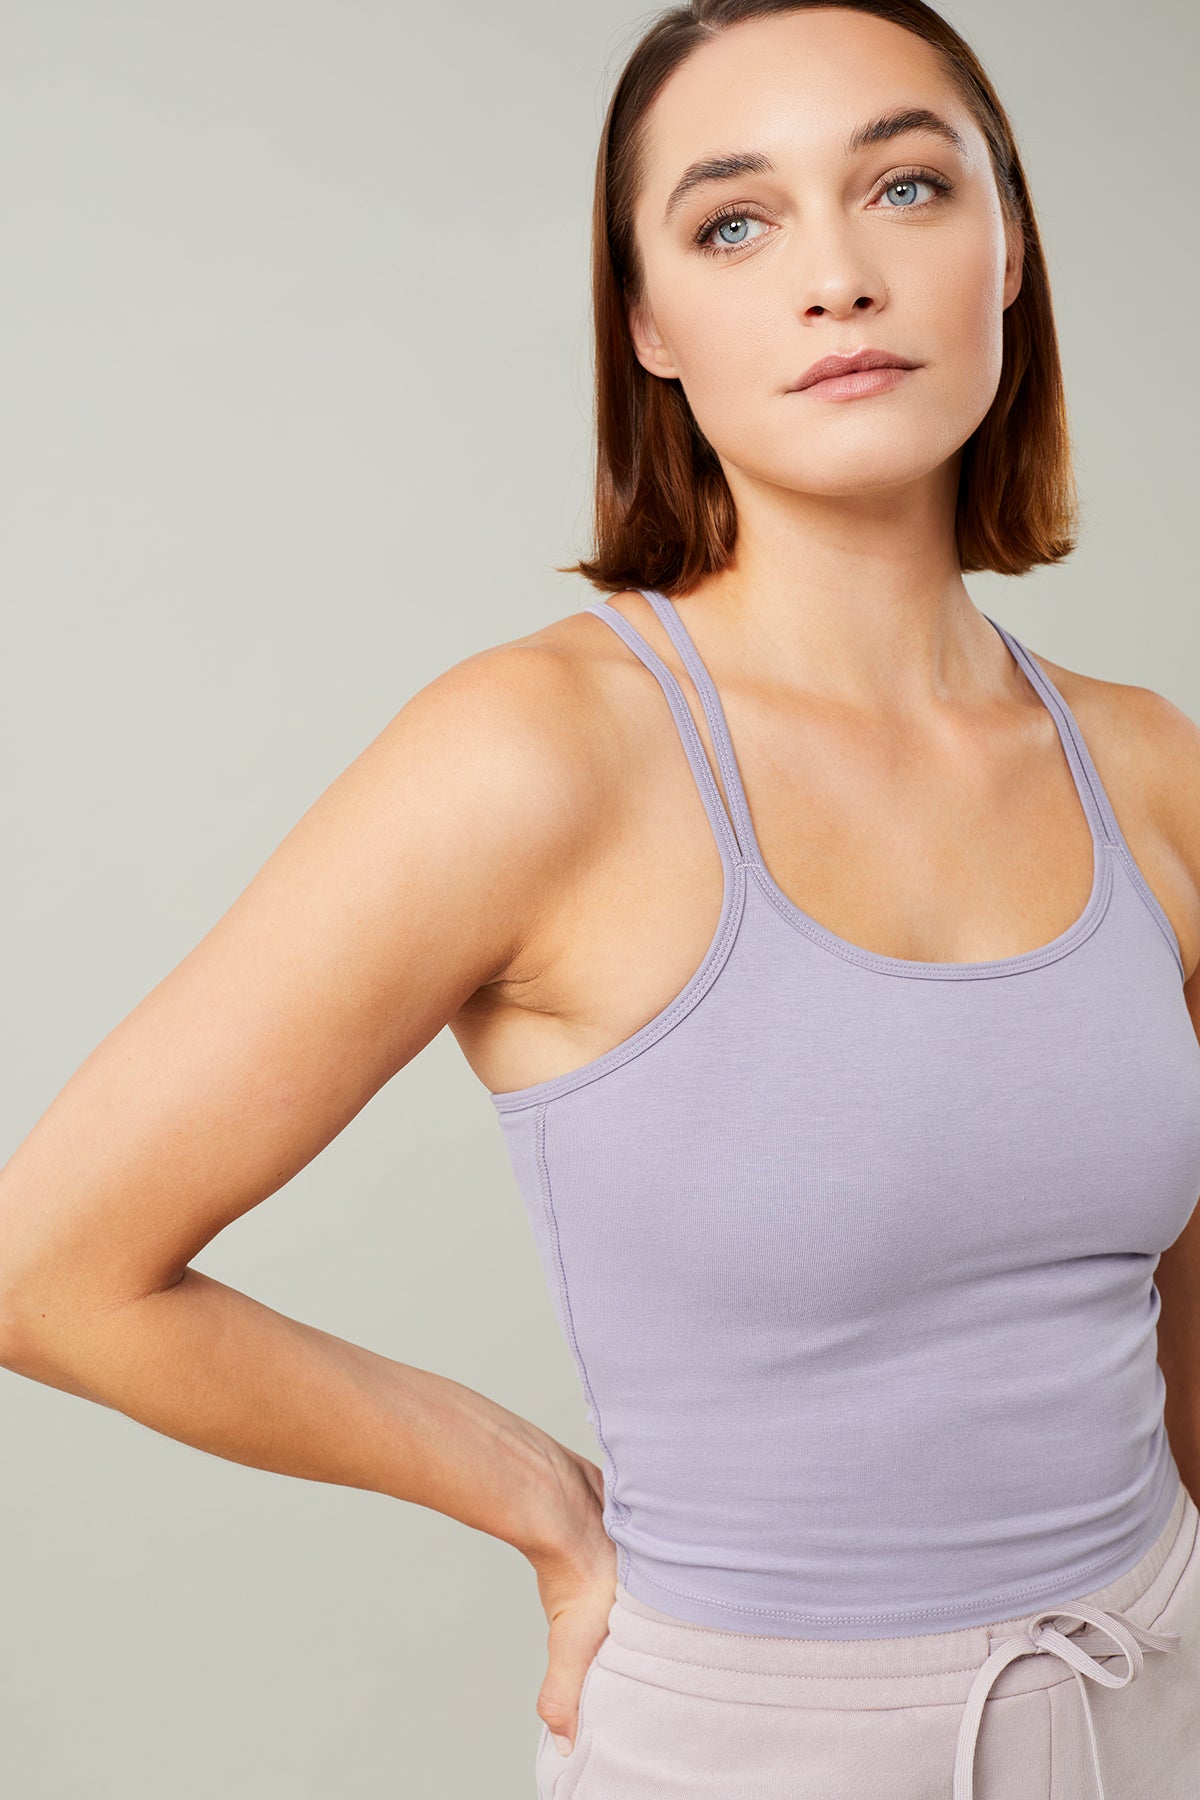 Yoga-Shirts & Yoga-Oberteile für Damen 🧘🏻‍♀️ fair & nachhaltig